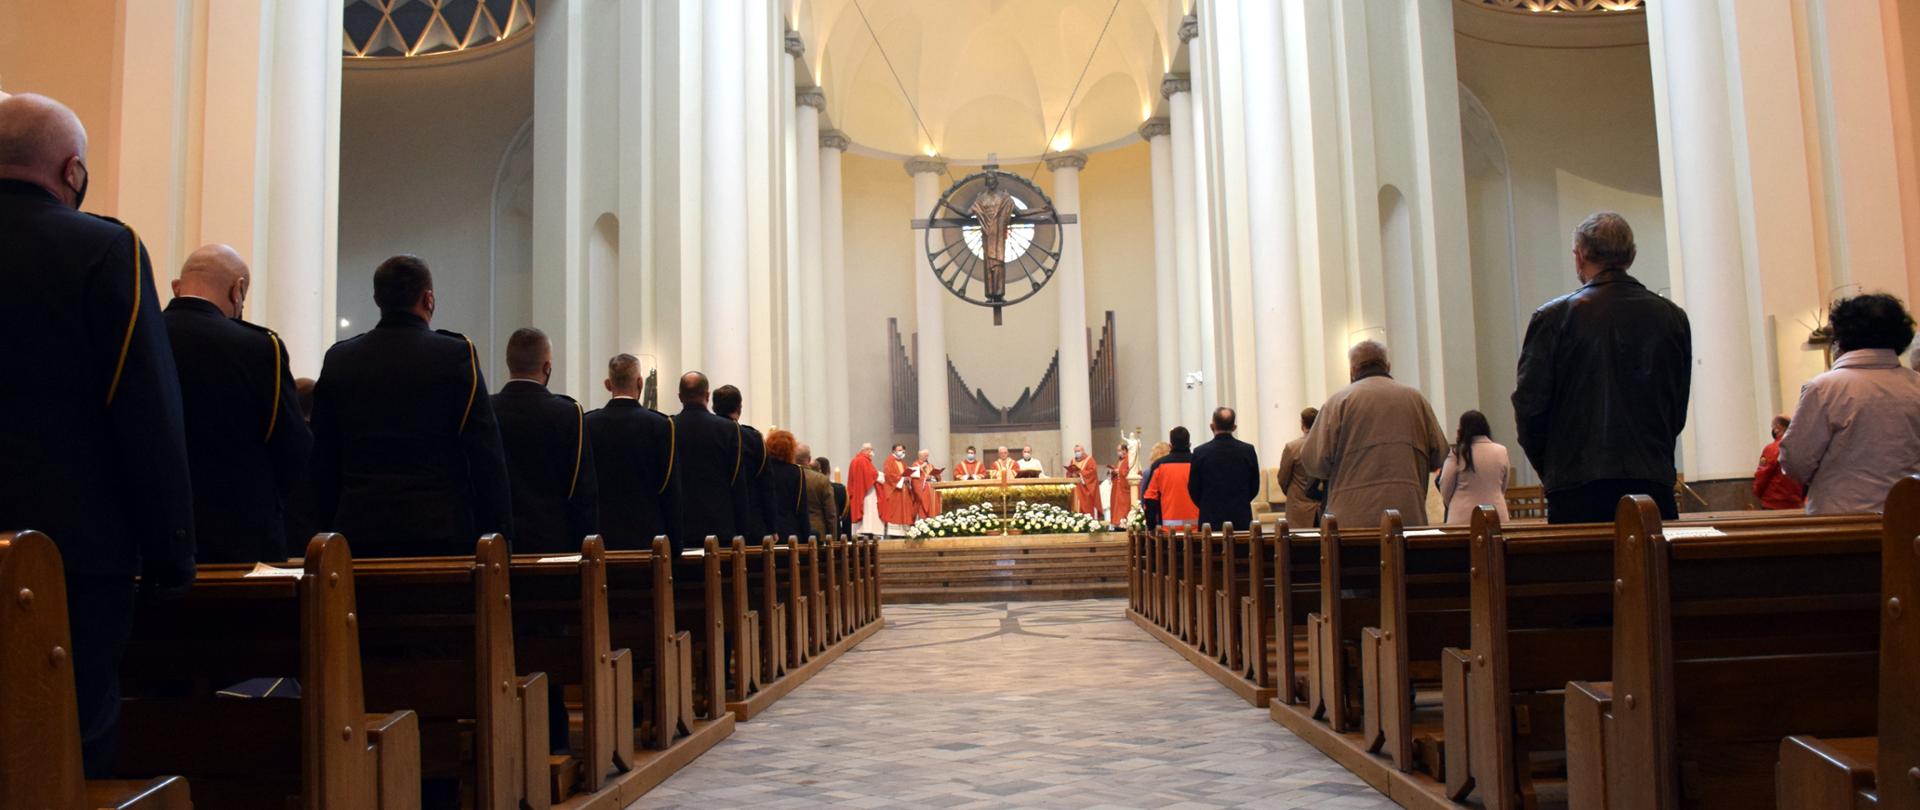 Msza święta w intencji strażaków w w Archikatedrze Chrystusa Króla w Katowicach. Po lewej stoją strażacy w mundurach galowych po prawej zaproszeni goście i inni uczestnicy mszy. W głębi ołtarz.